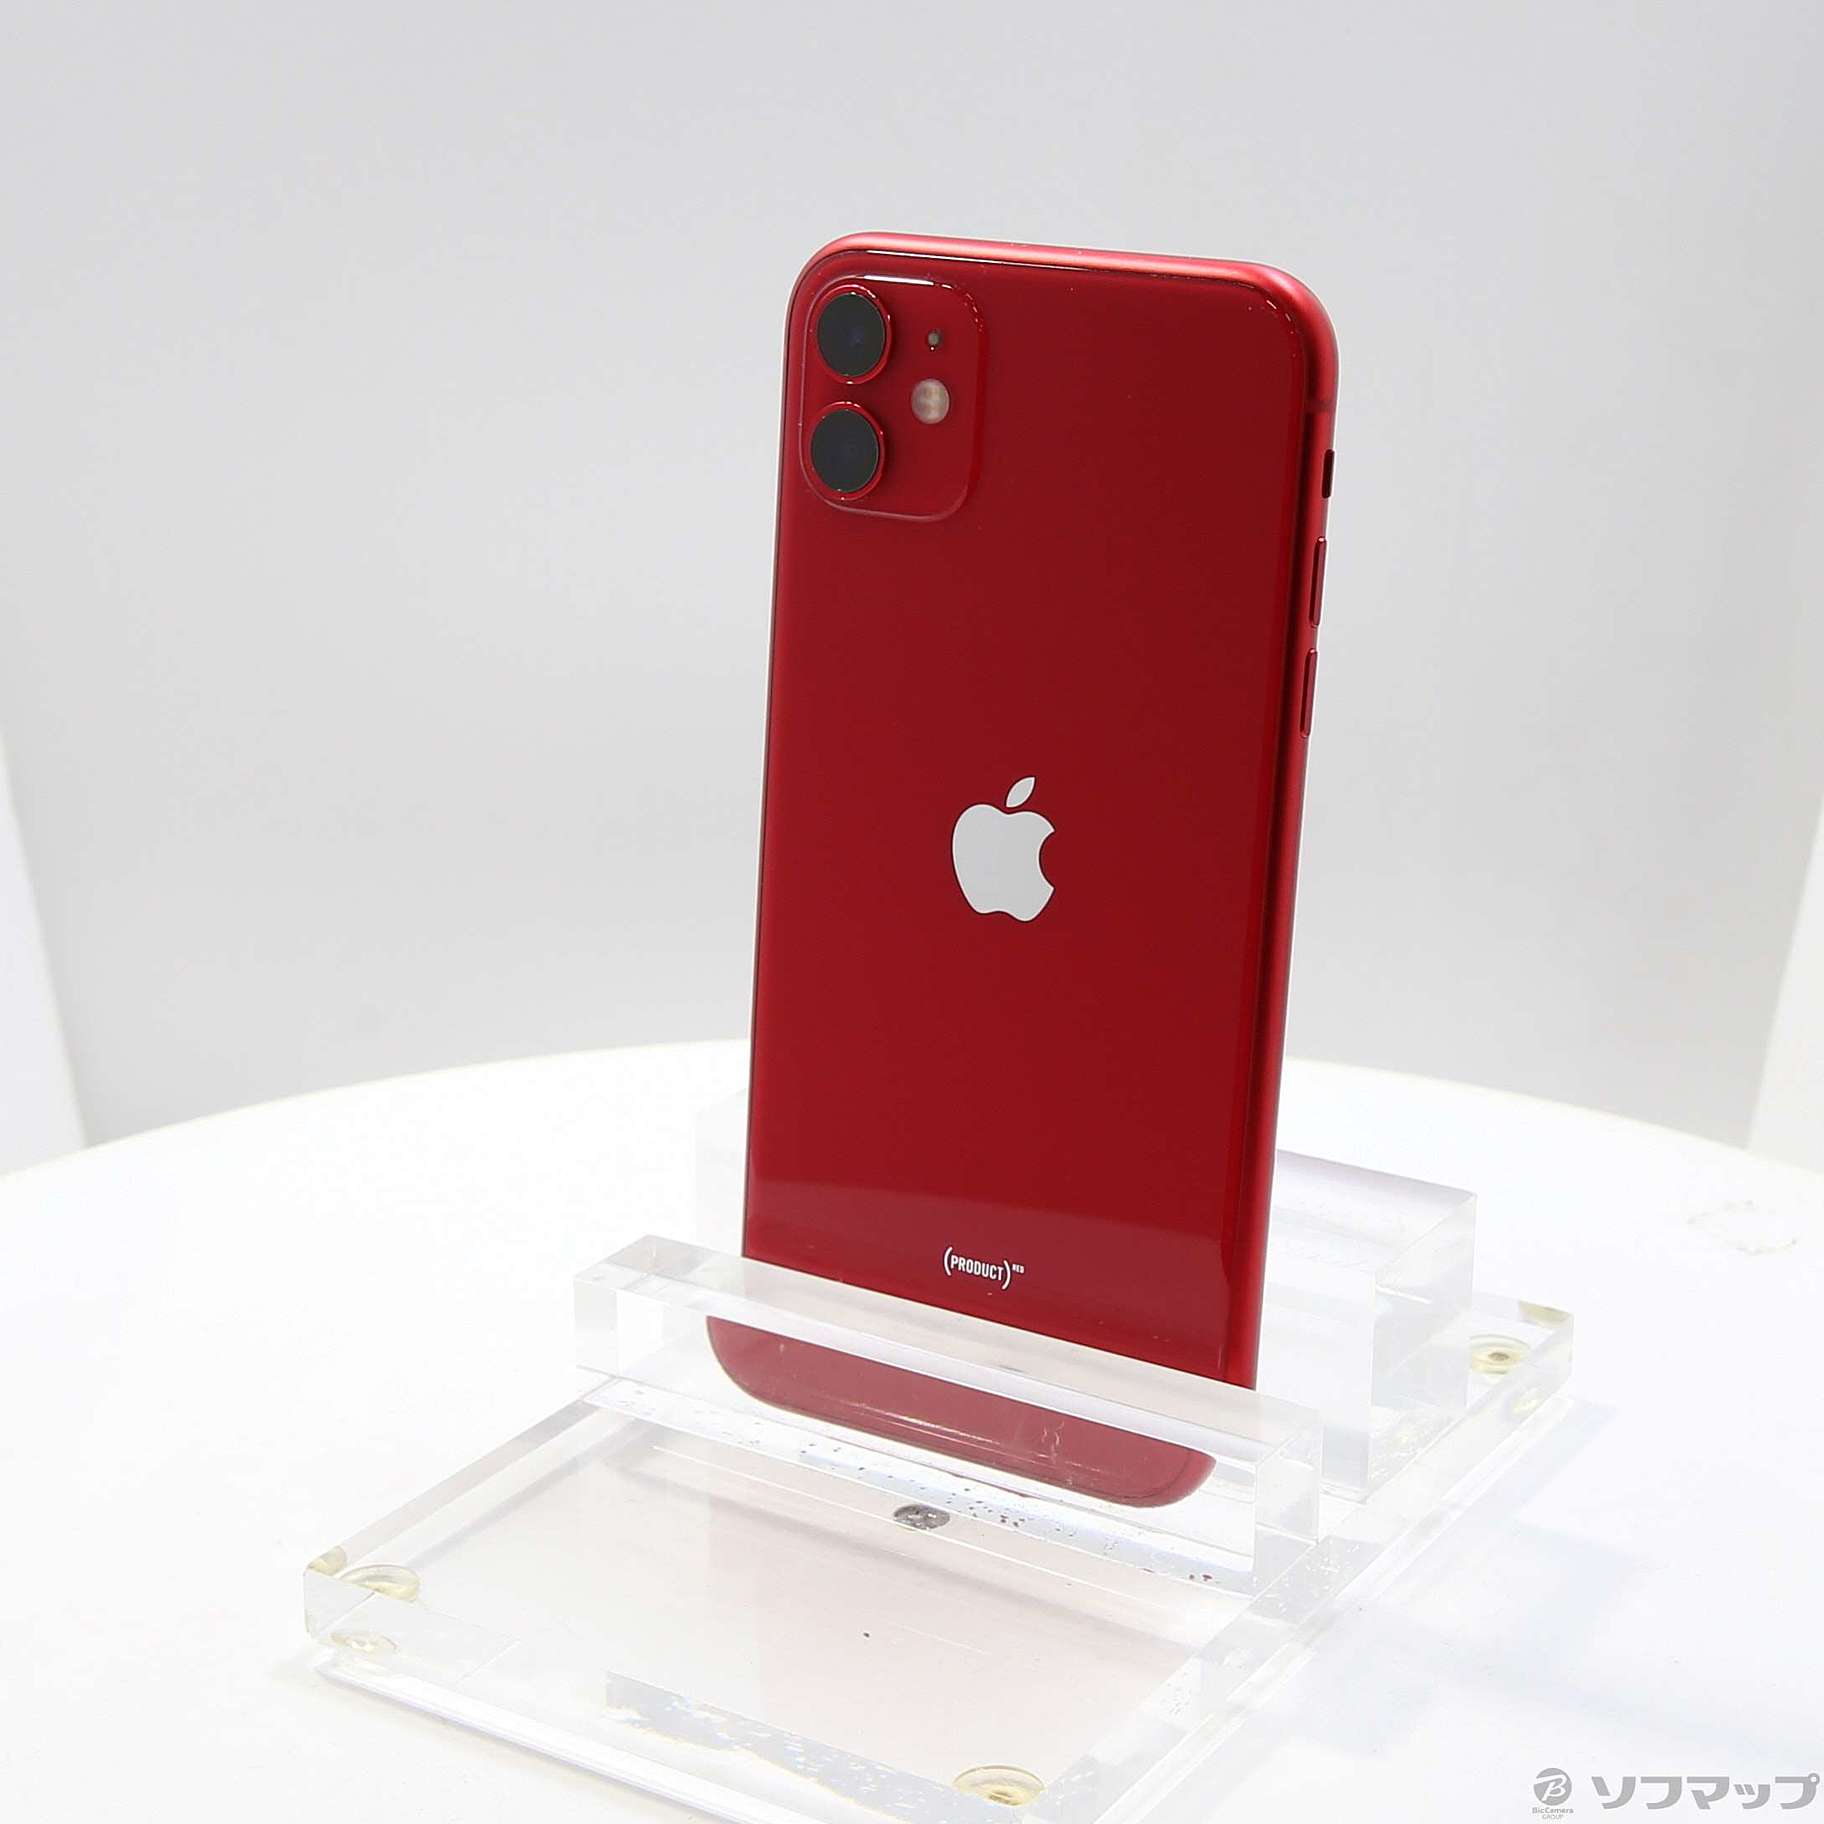 【新品未開封】iPhone11 (PRODUCT)RED 64GB SIMフリー